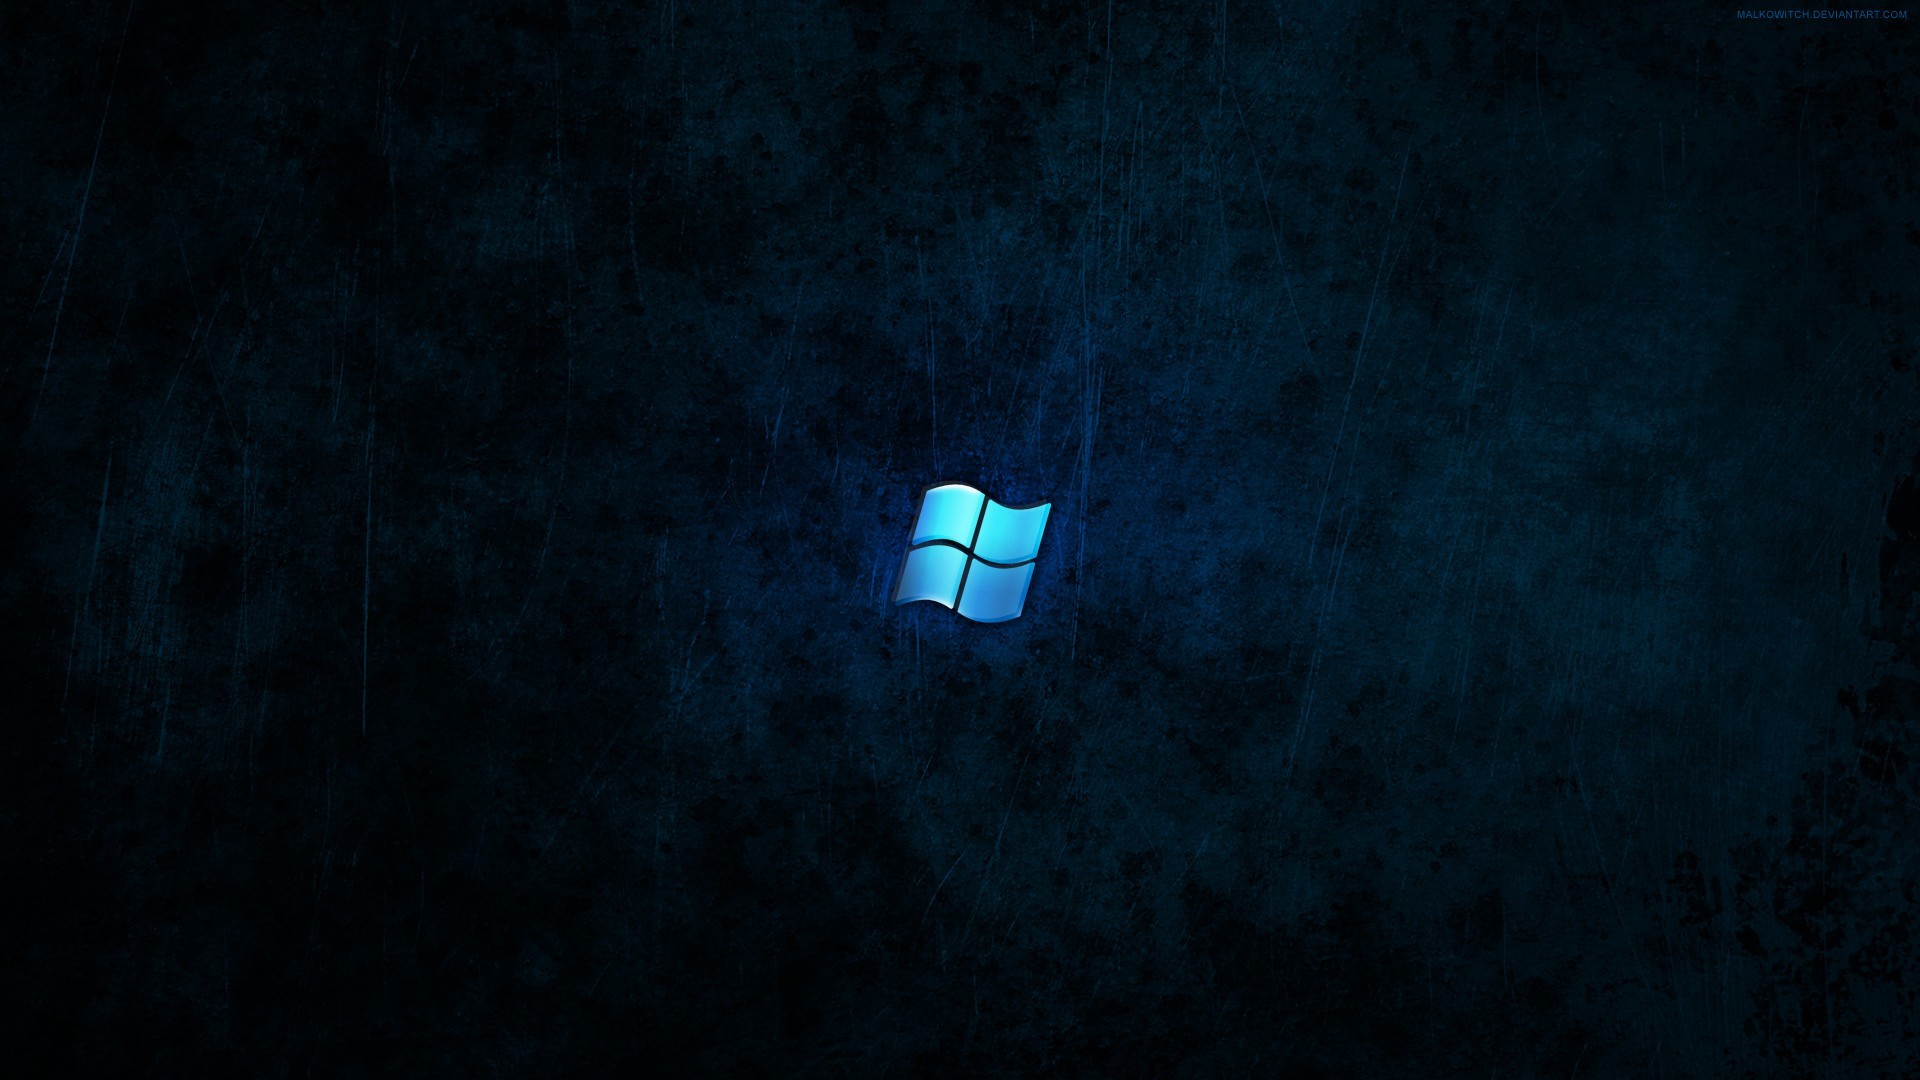 Home High Tech HD Wallpaper Windows Logo Background